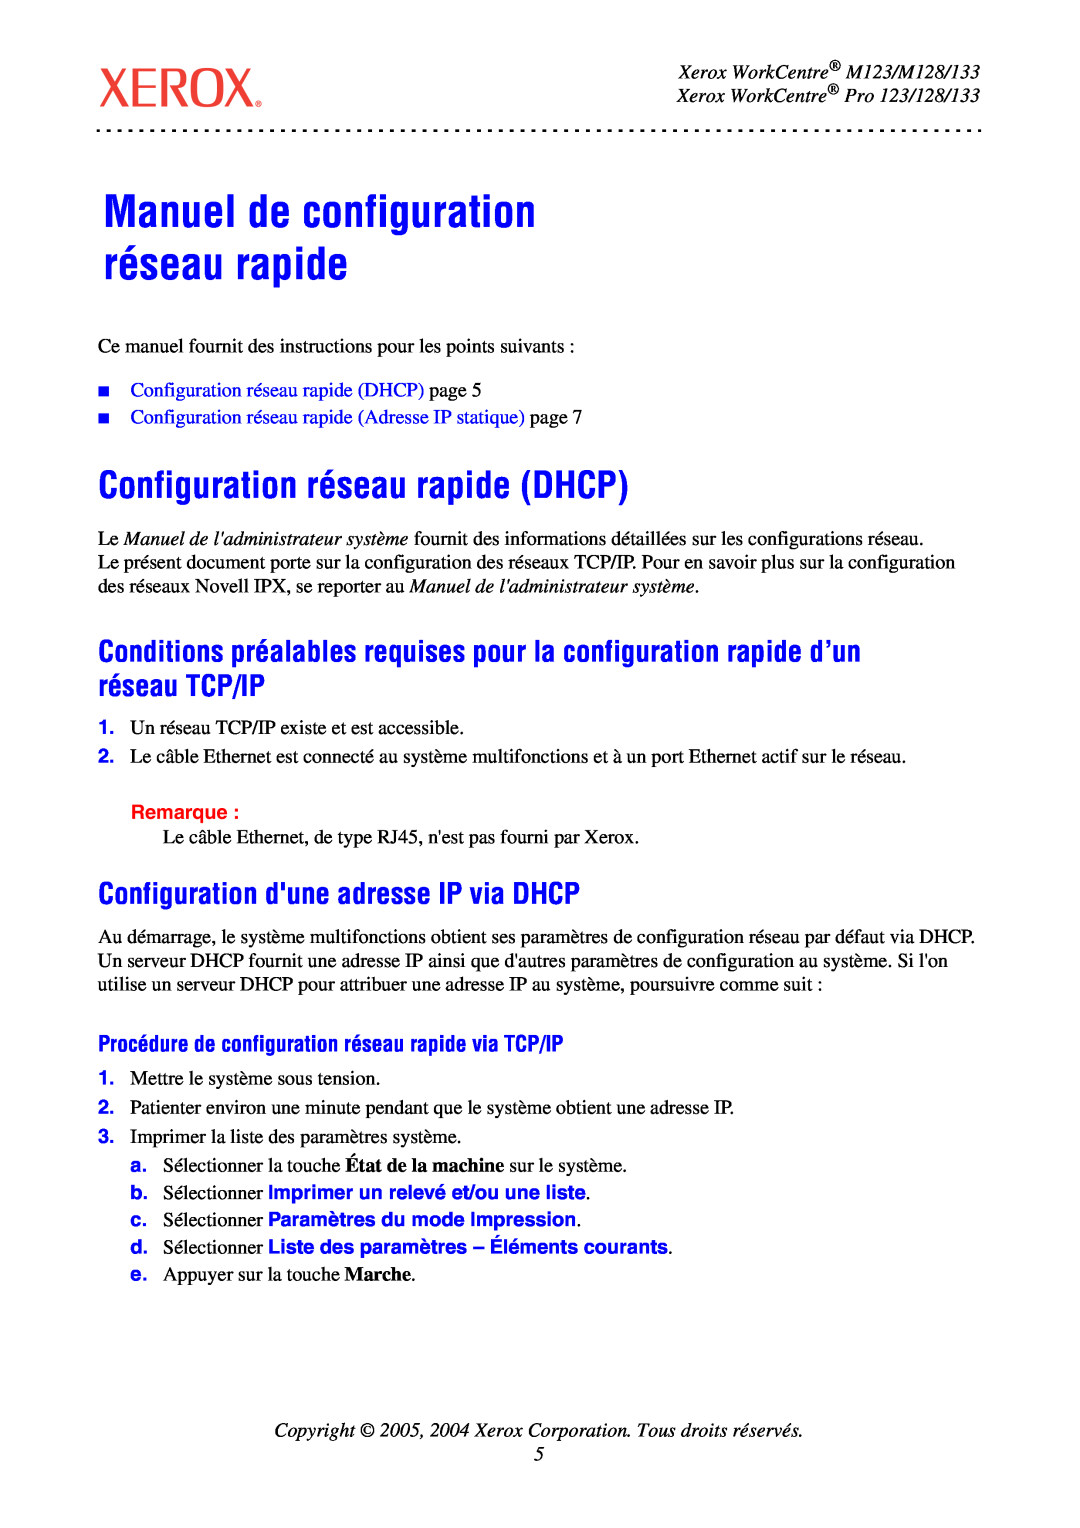 Xerox Manuel de configuration réseau rapide, Configuration réseau rapide DHCP, Xerox WorkCentre M123/M128/133, Remarque 